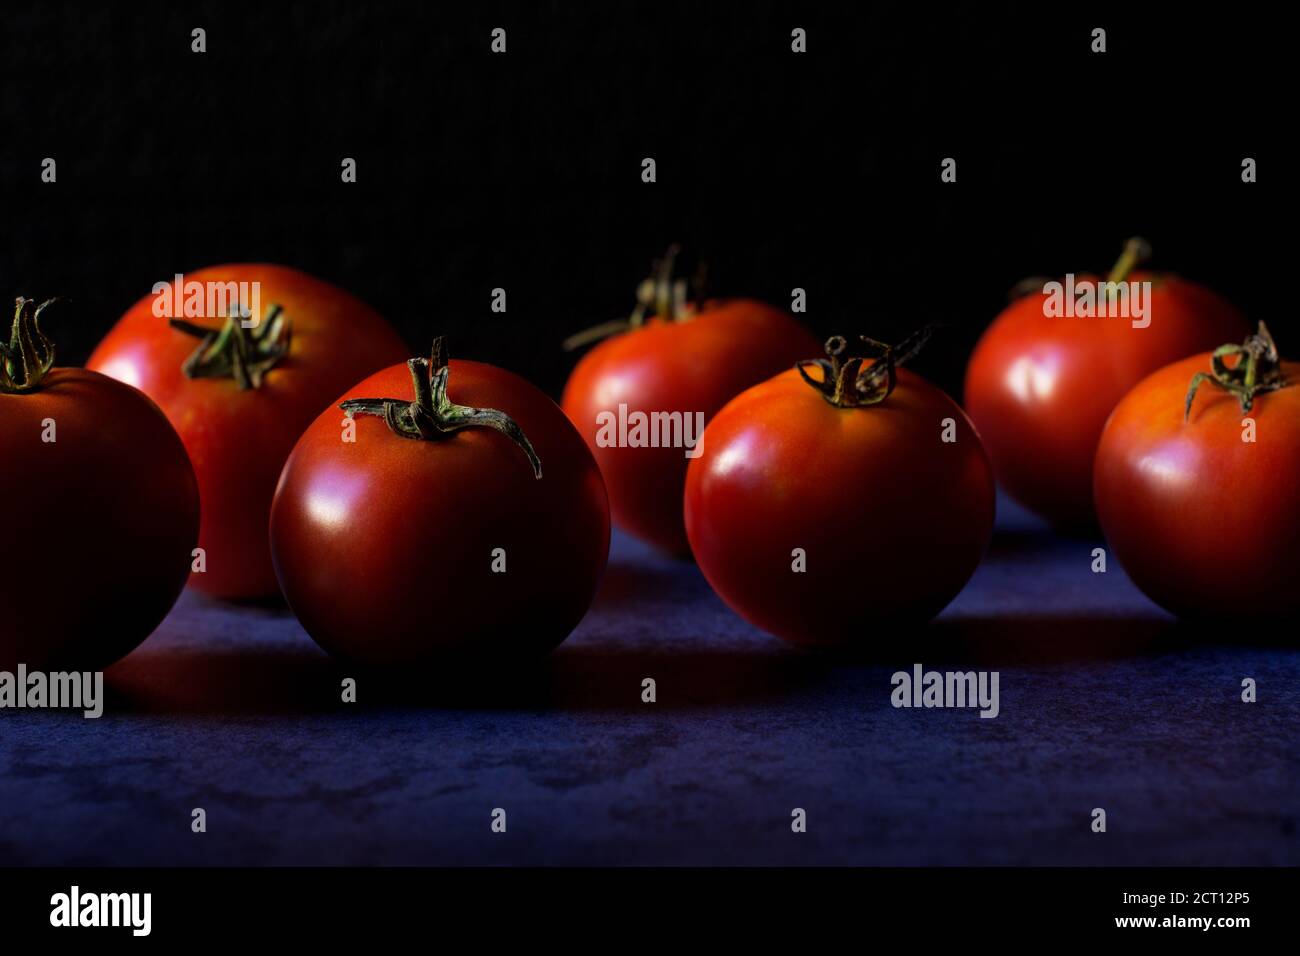 Les tomates rouges mûres reposent sur un fond bleu foncé. Mise au point sélective. Banque D'Images